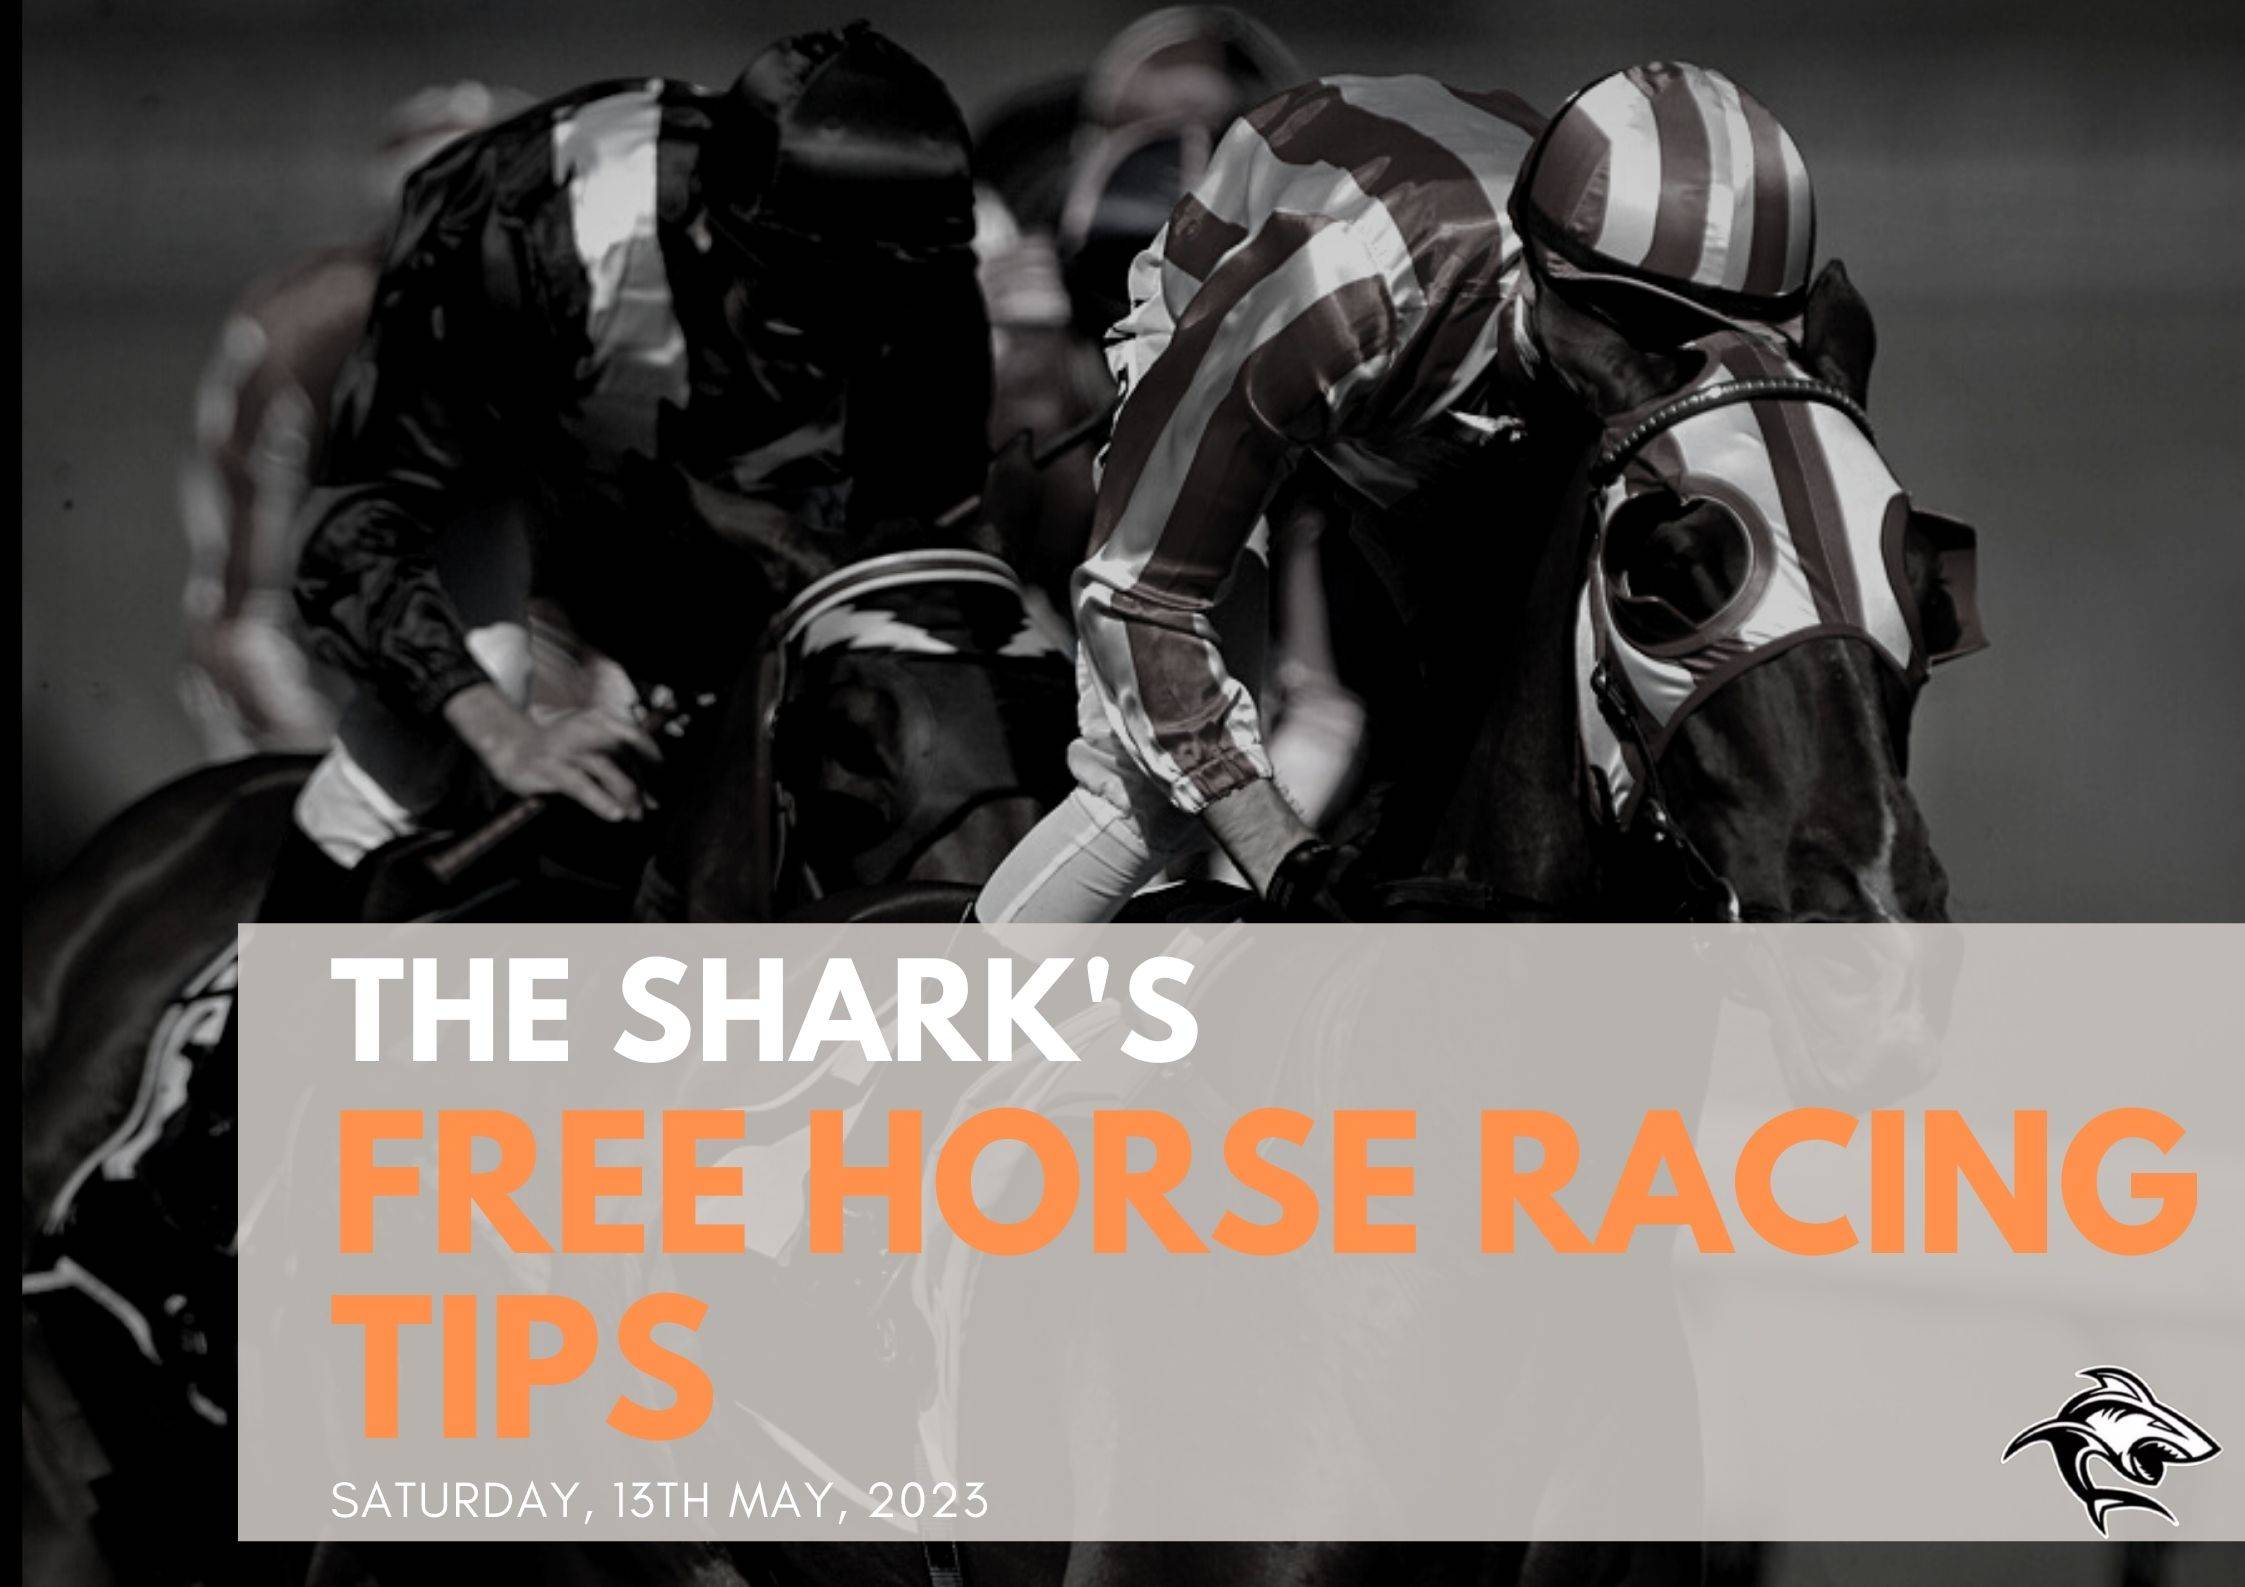 Free Horse Racing Tips - 13th May